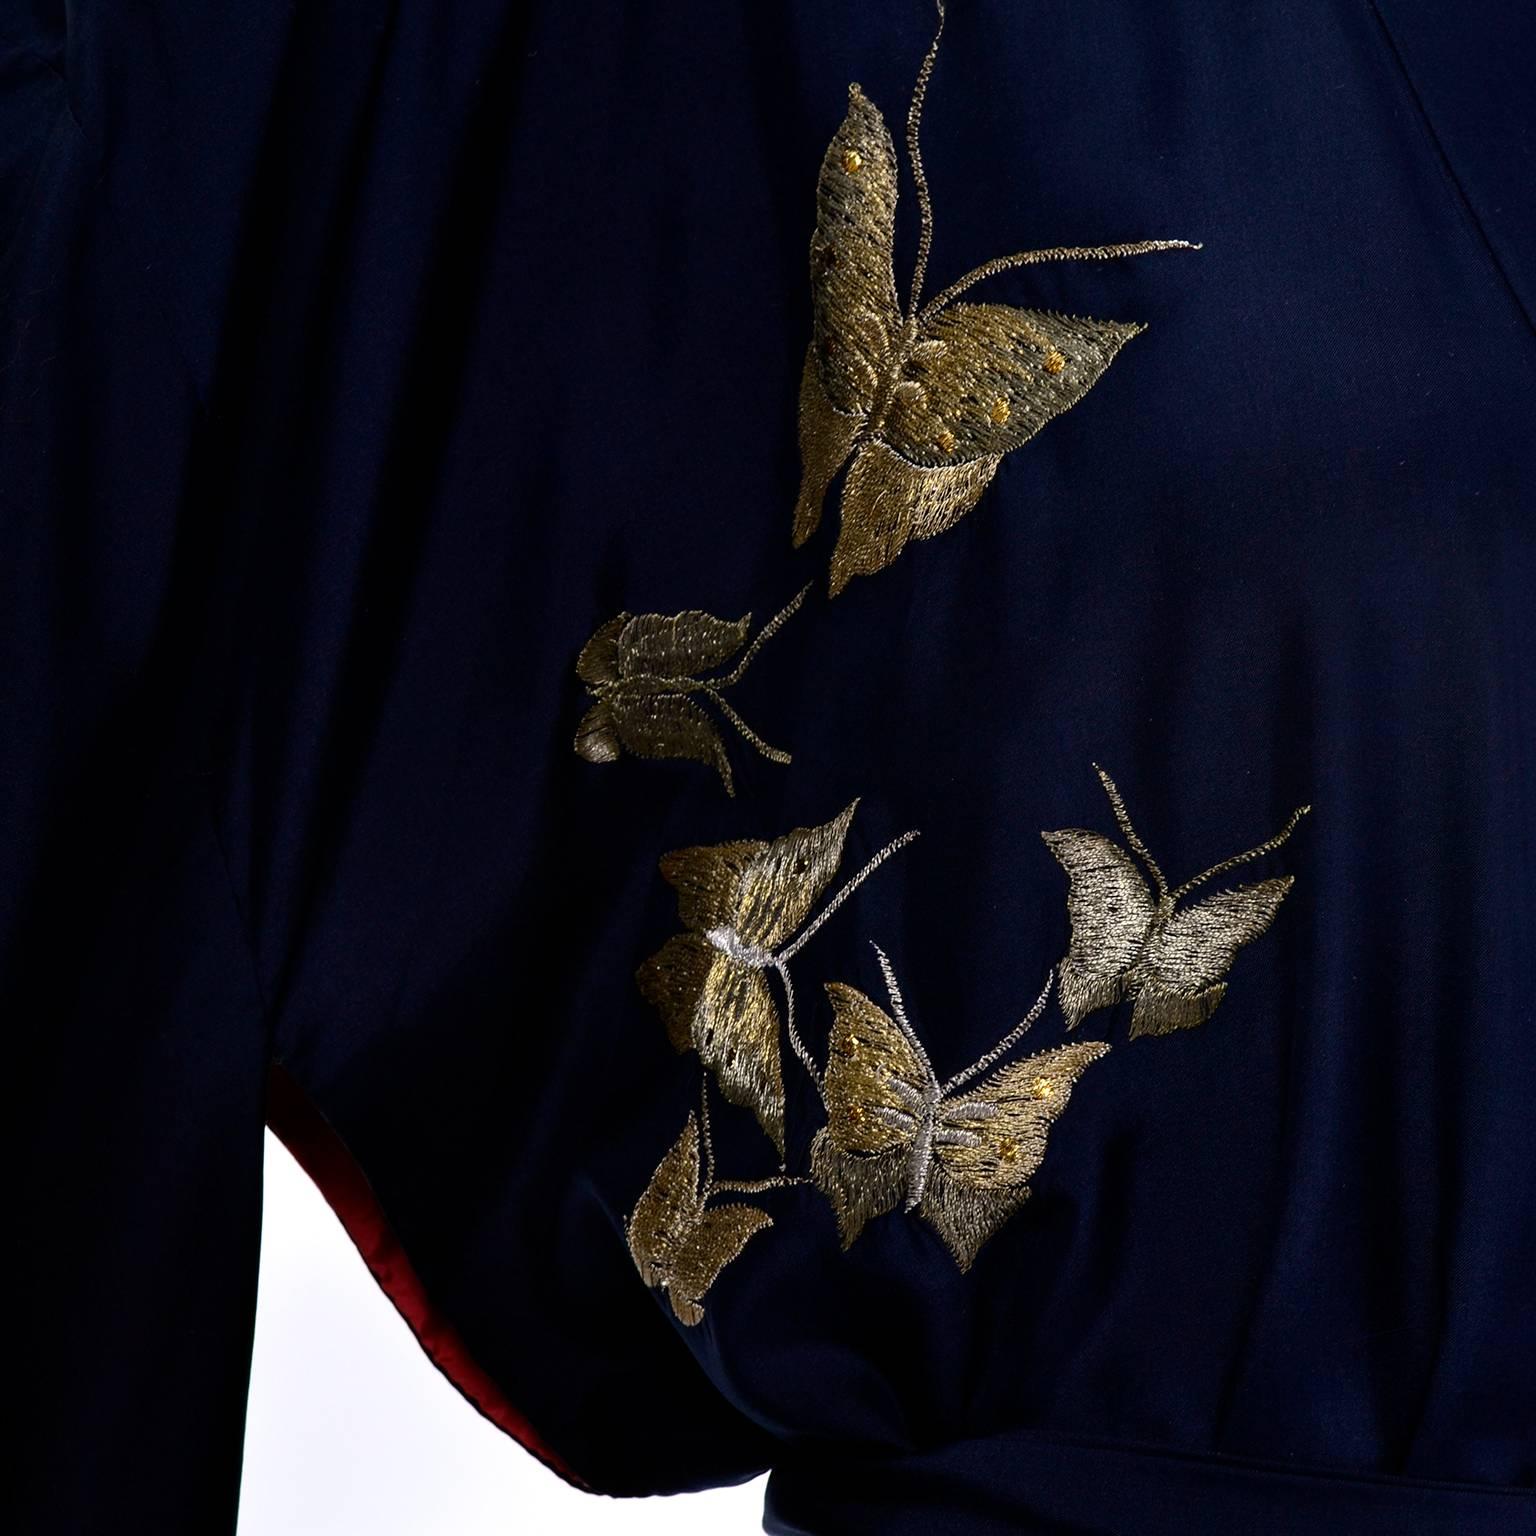 Black Silk Vintage Kimono Metallic Embroidery Butterflies Dressing Gown Robe